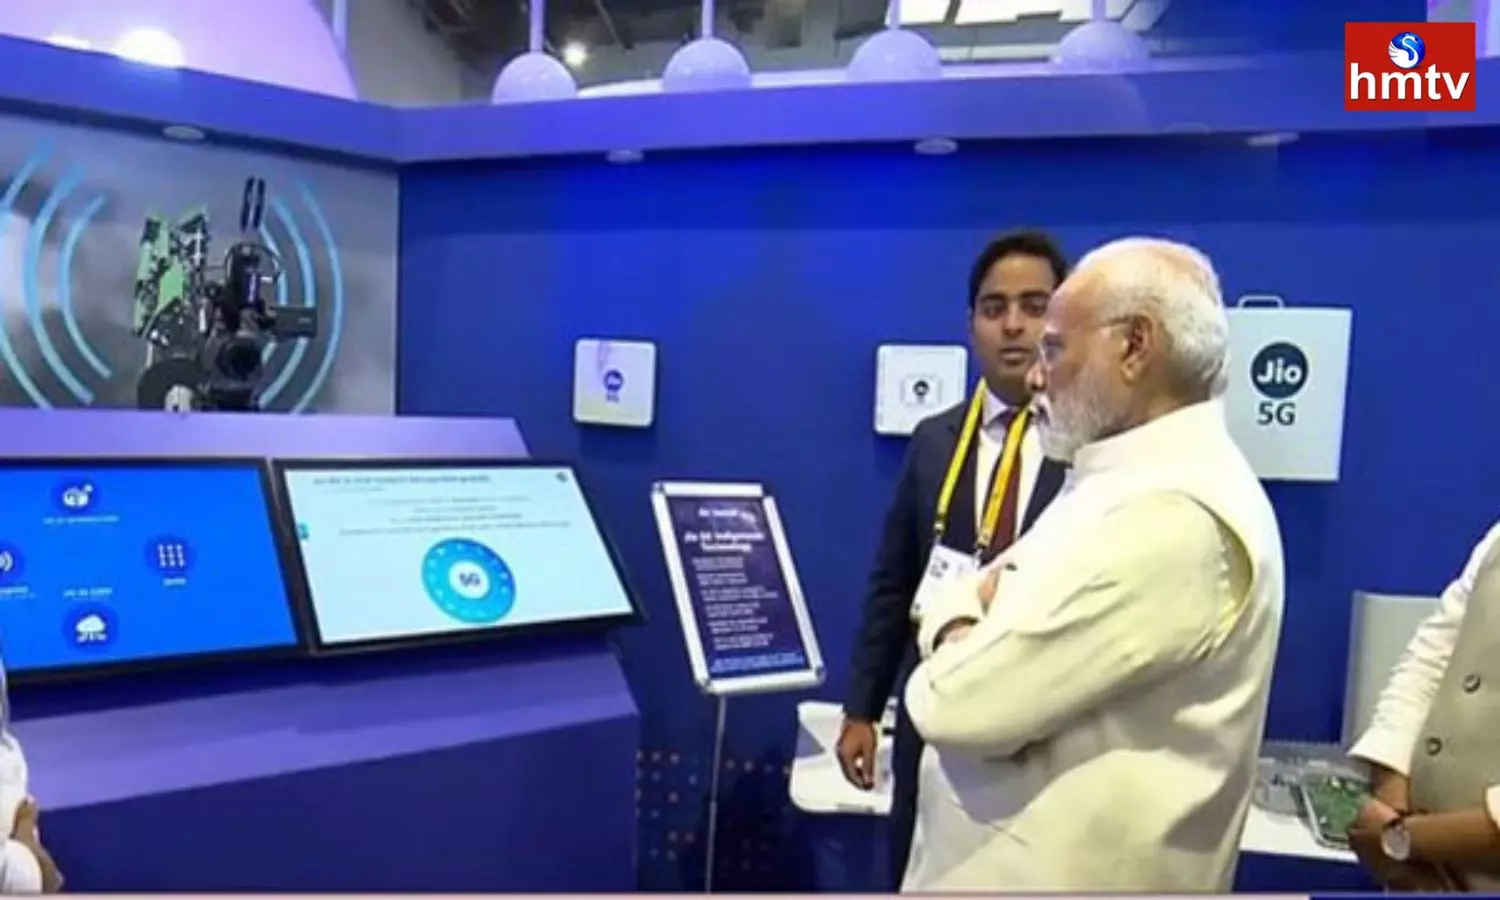 Prime Minister Modi Launched 5G Services at Pragati Maidan in Delhi